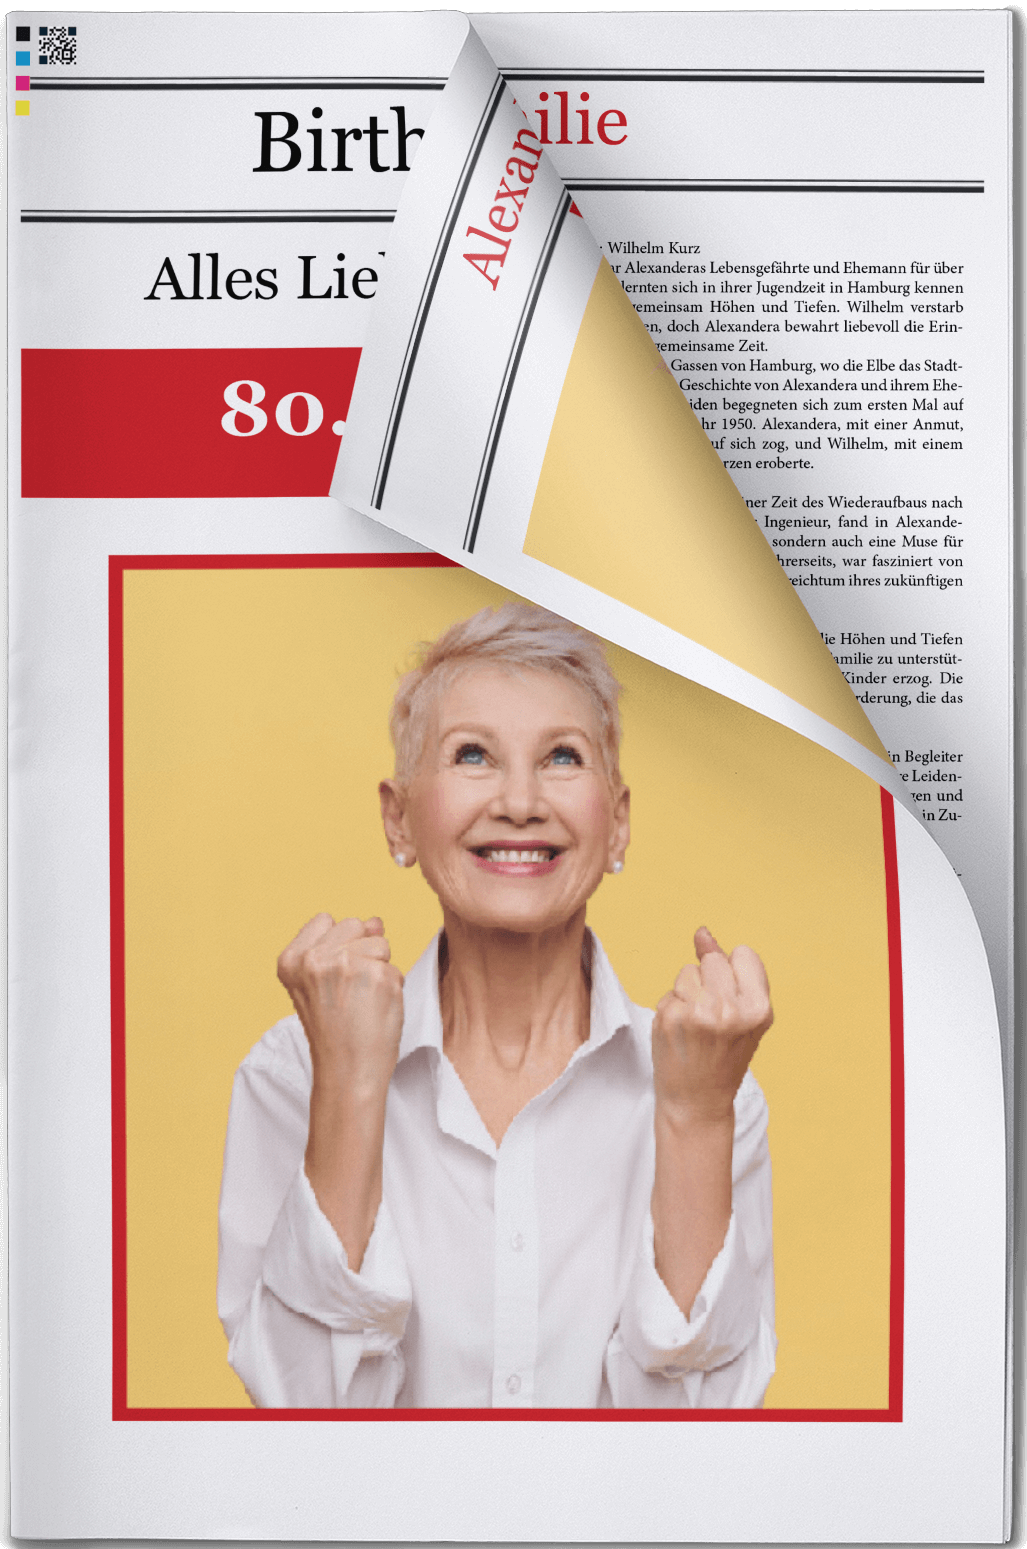 Vorlage für Titelseite einer 80. Geburtstagszeitung